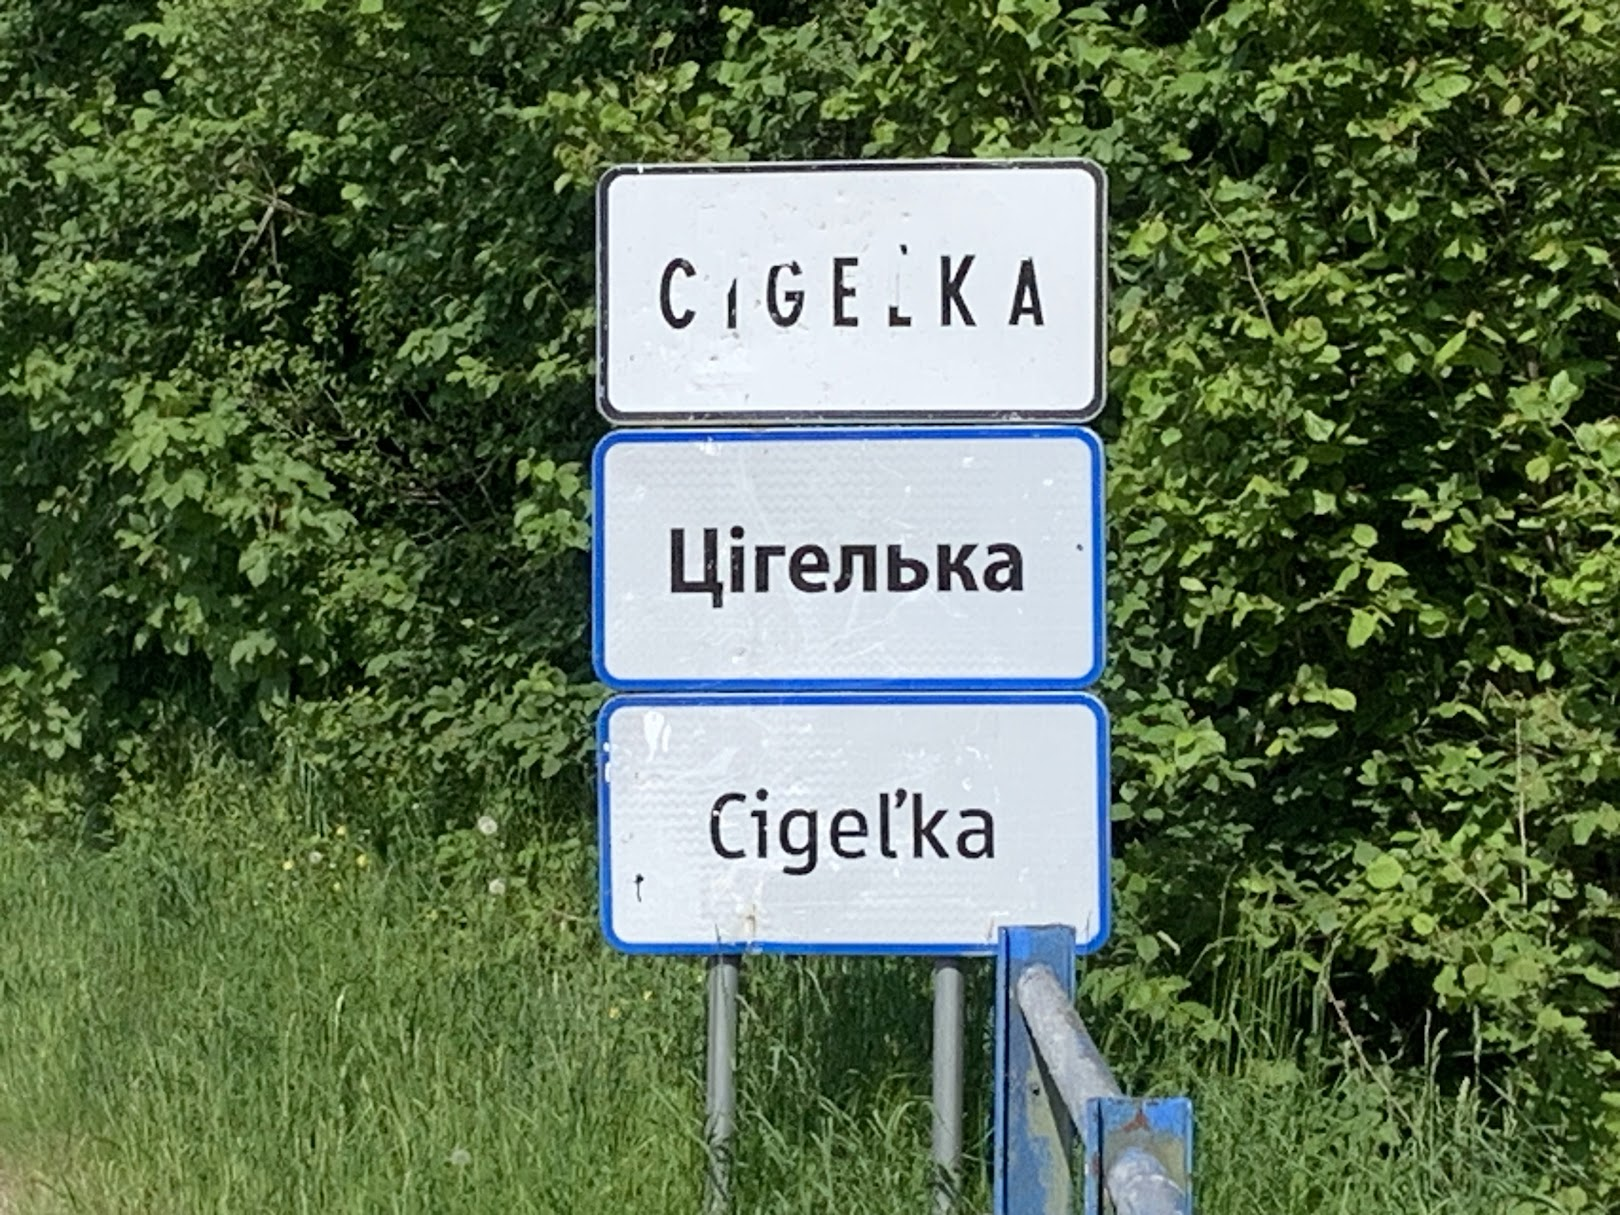 Cigel’ka - nazwa w języku słowackim, rusińskim i romskim